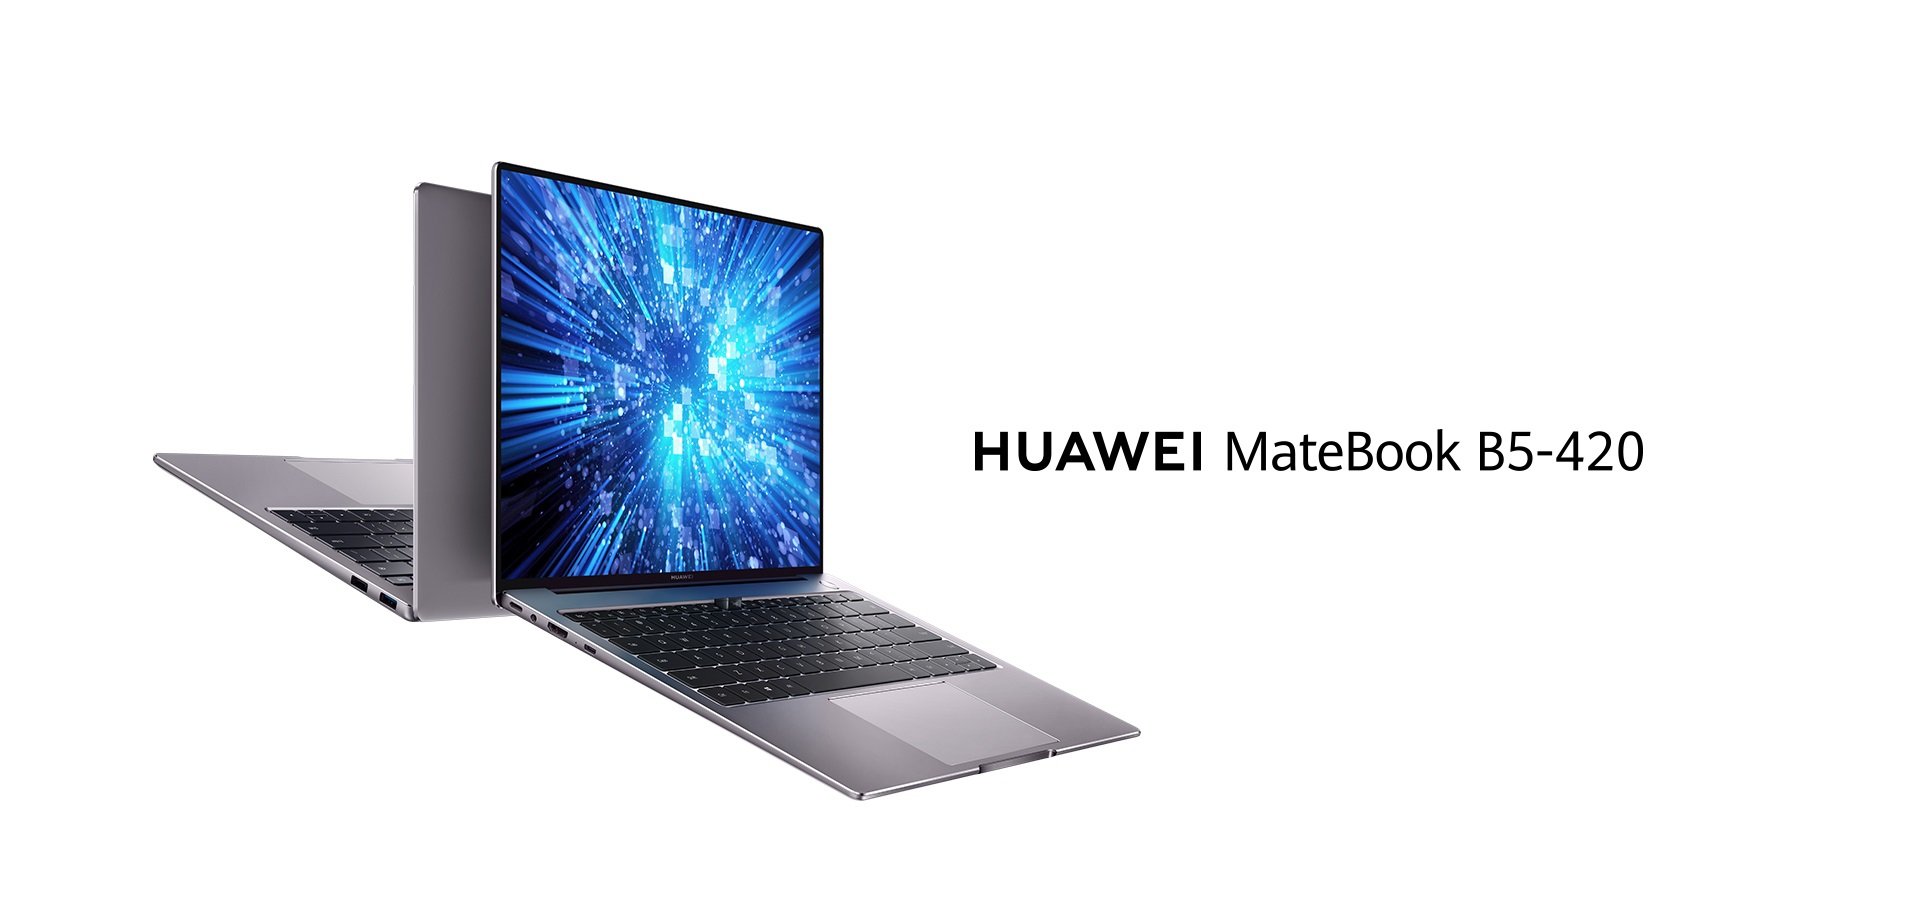 Huawei MateBook B5-420 laptop